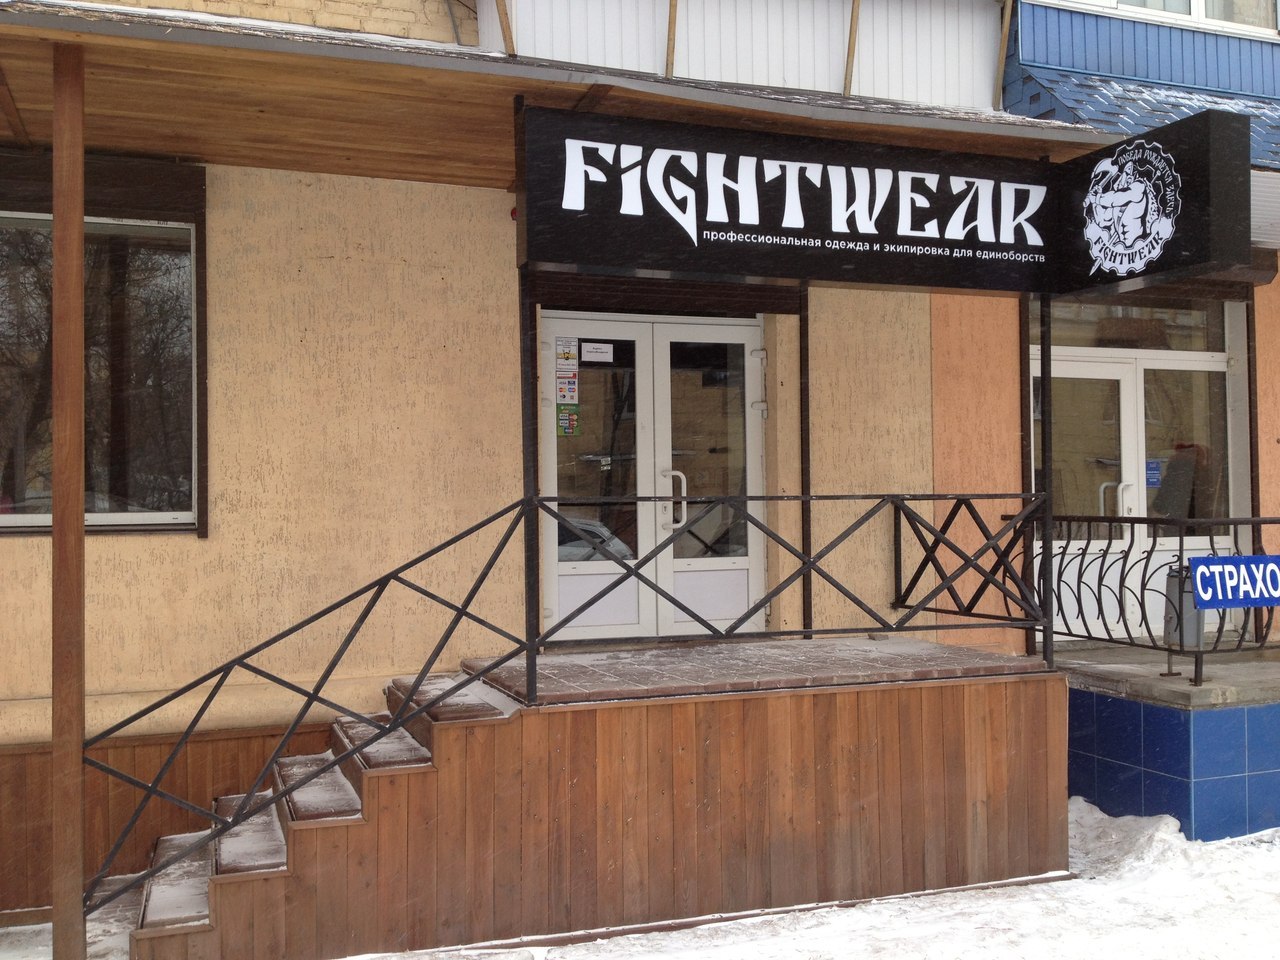 Открытие шестого магазина Fightwear